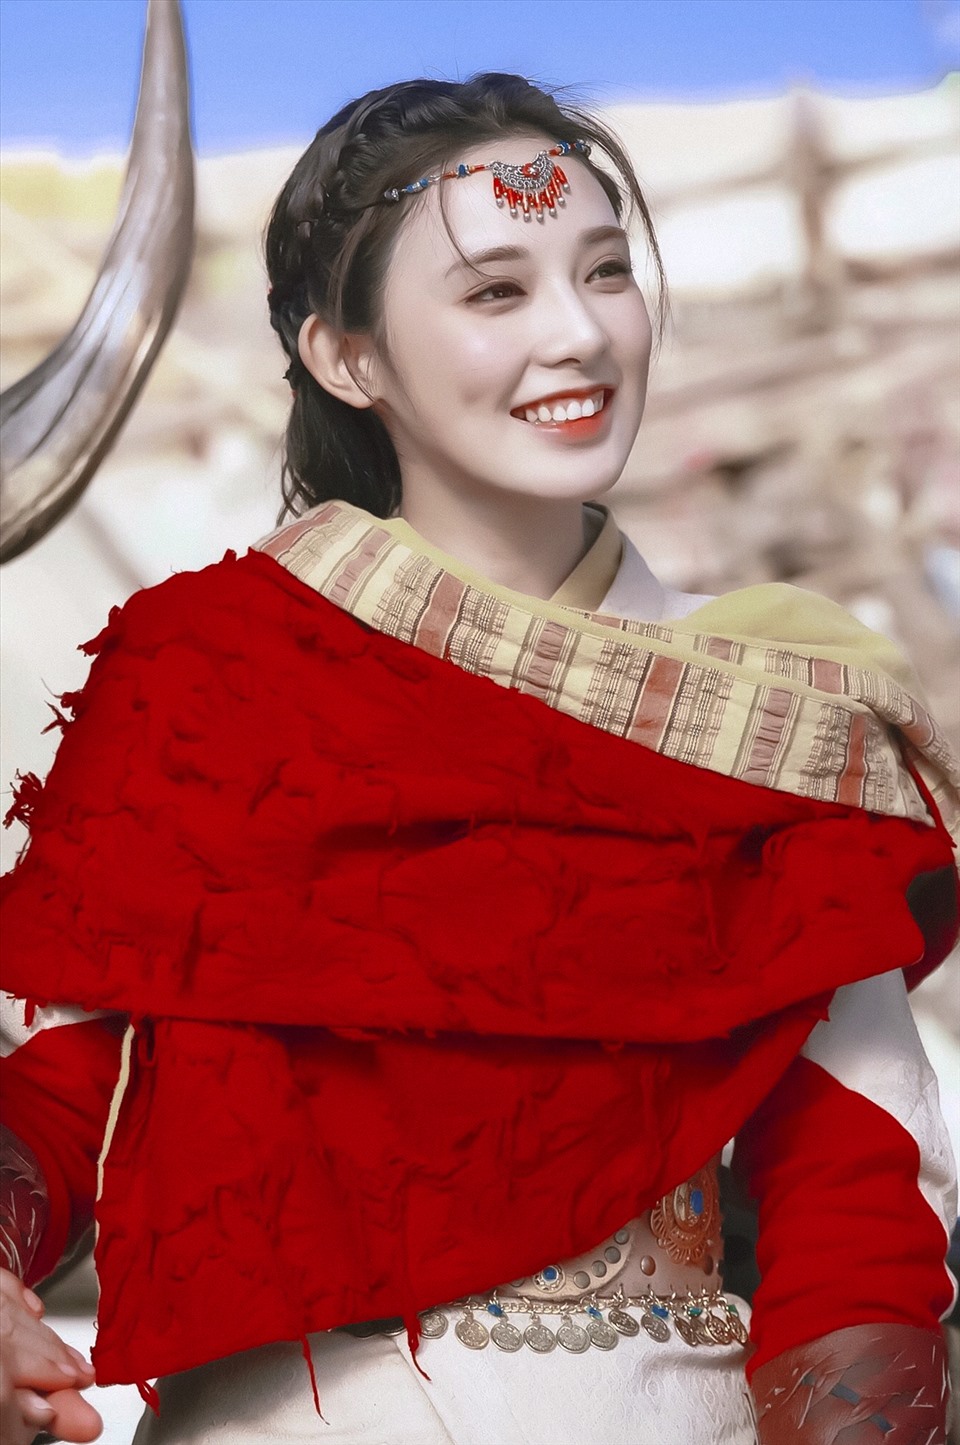 Bành Tiểu Nhiễm được mệnh danh là “hồng y mỹ nữ“nhờ ngoại hình xinh đẹp. Diễn xuất của cô cũng được đánh giá tốt với nhiều cảnh khóc đầy đau thương.